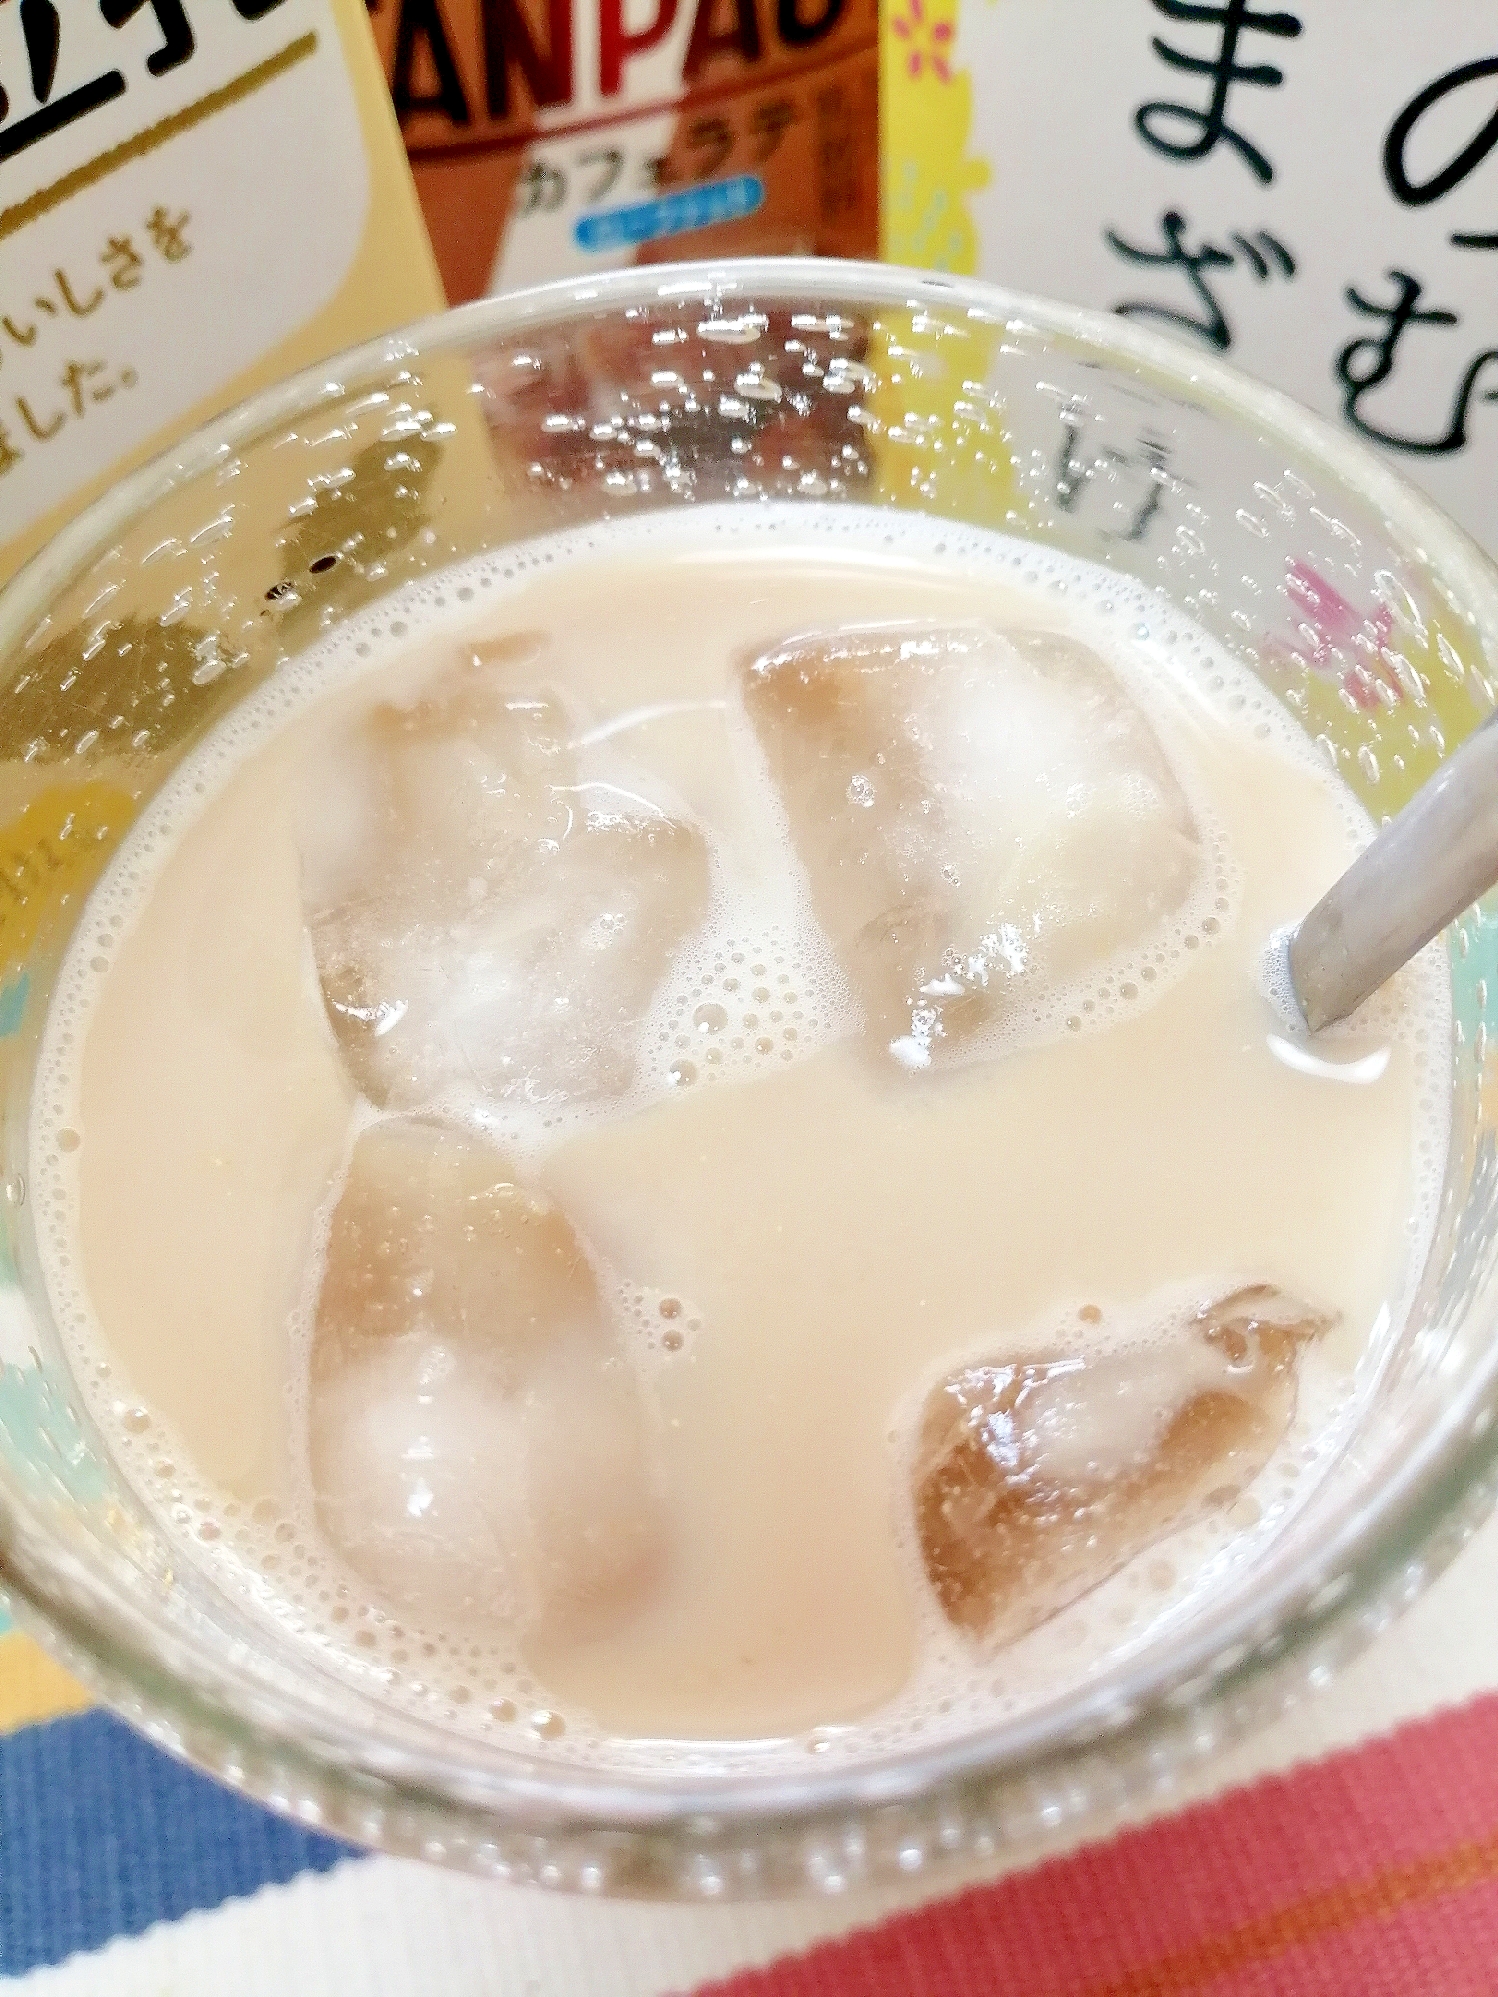 アイス☆甘酒豆乳タンパクトカフェラテ♪